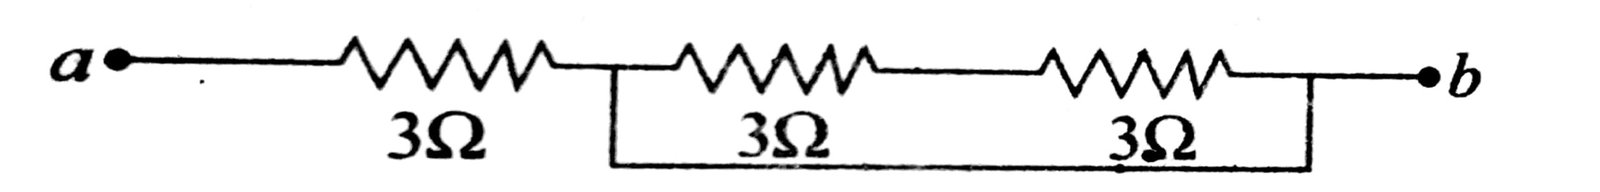 दिये गये चित्र में 'a' तथा 'b' के बीच समतुल्य प्रतिरोध है